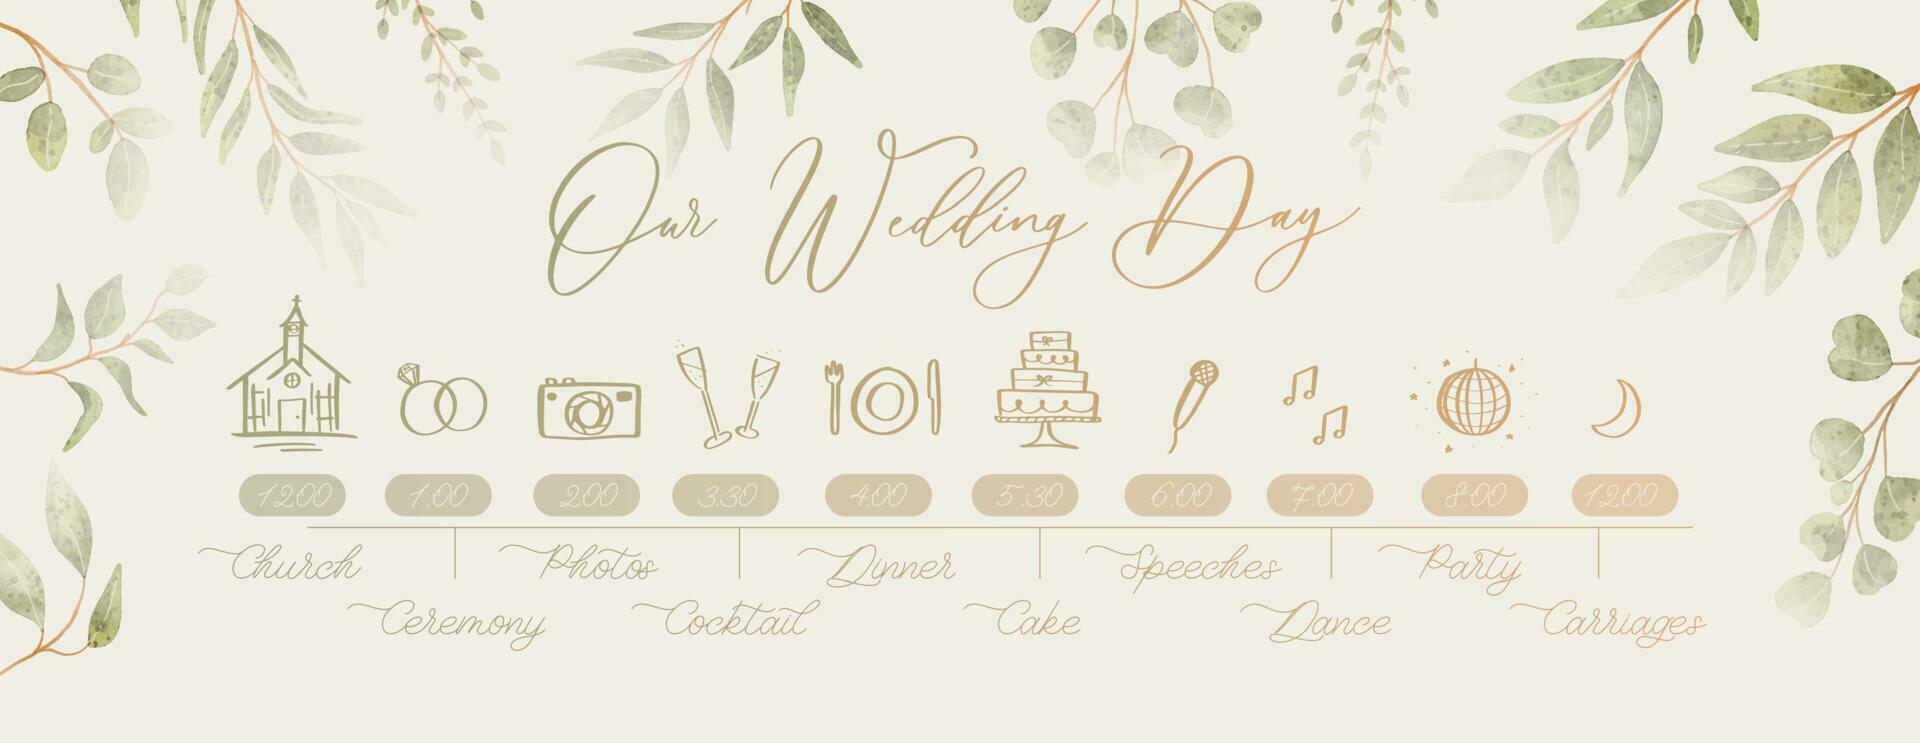 Hochzeit Zeitleiste Speisekarte auf Hochzeit Tag. unser Hochzeit Tag Kalligraphie Inschrift. vektor